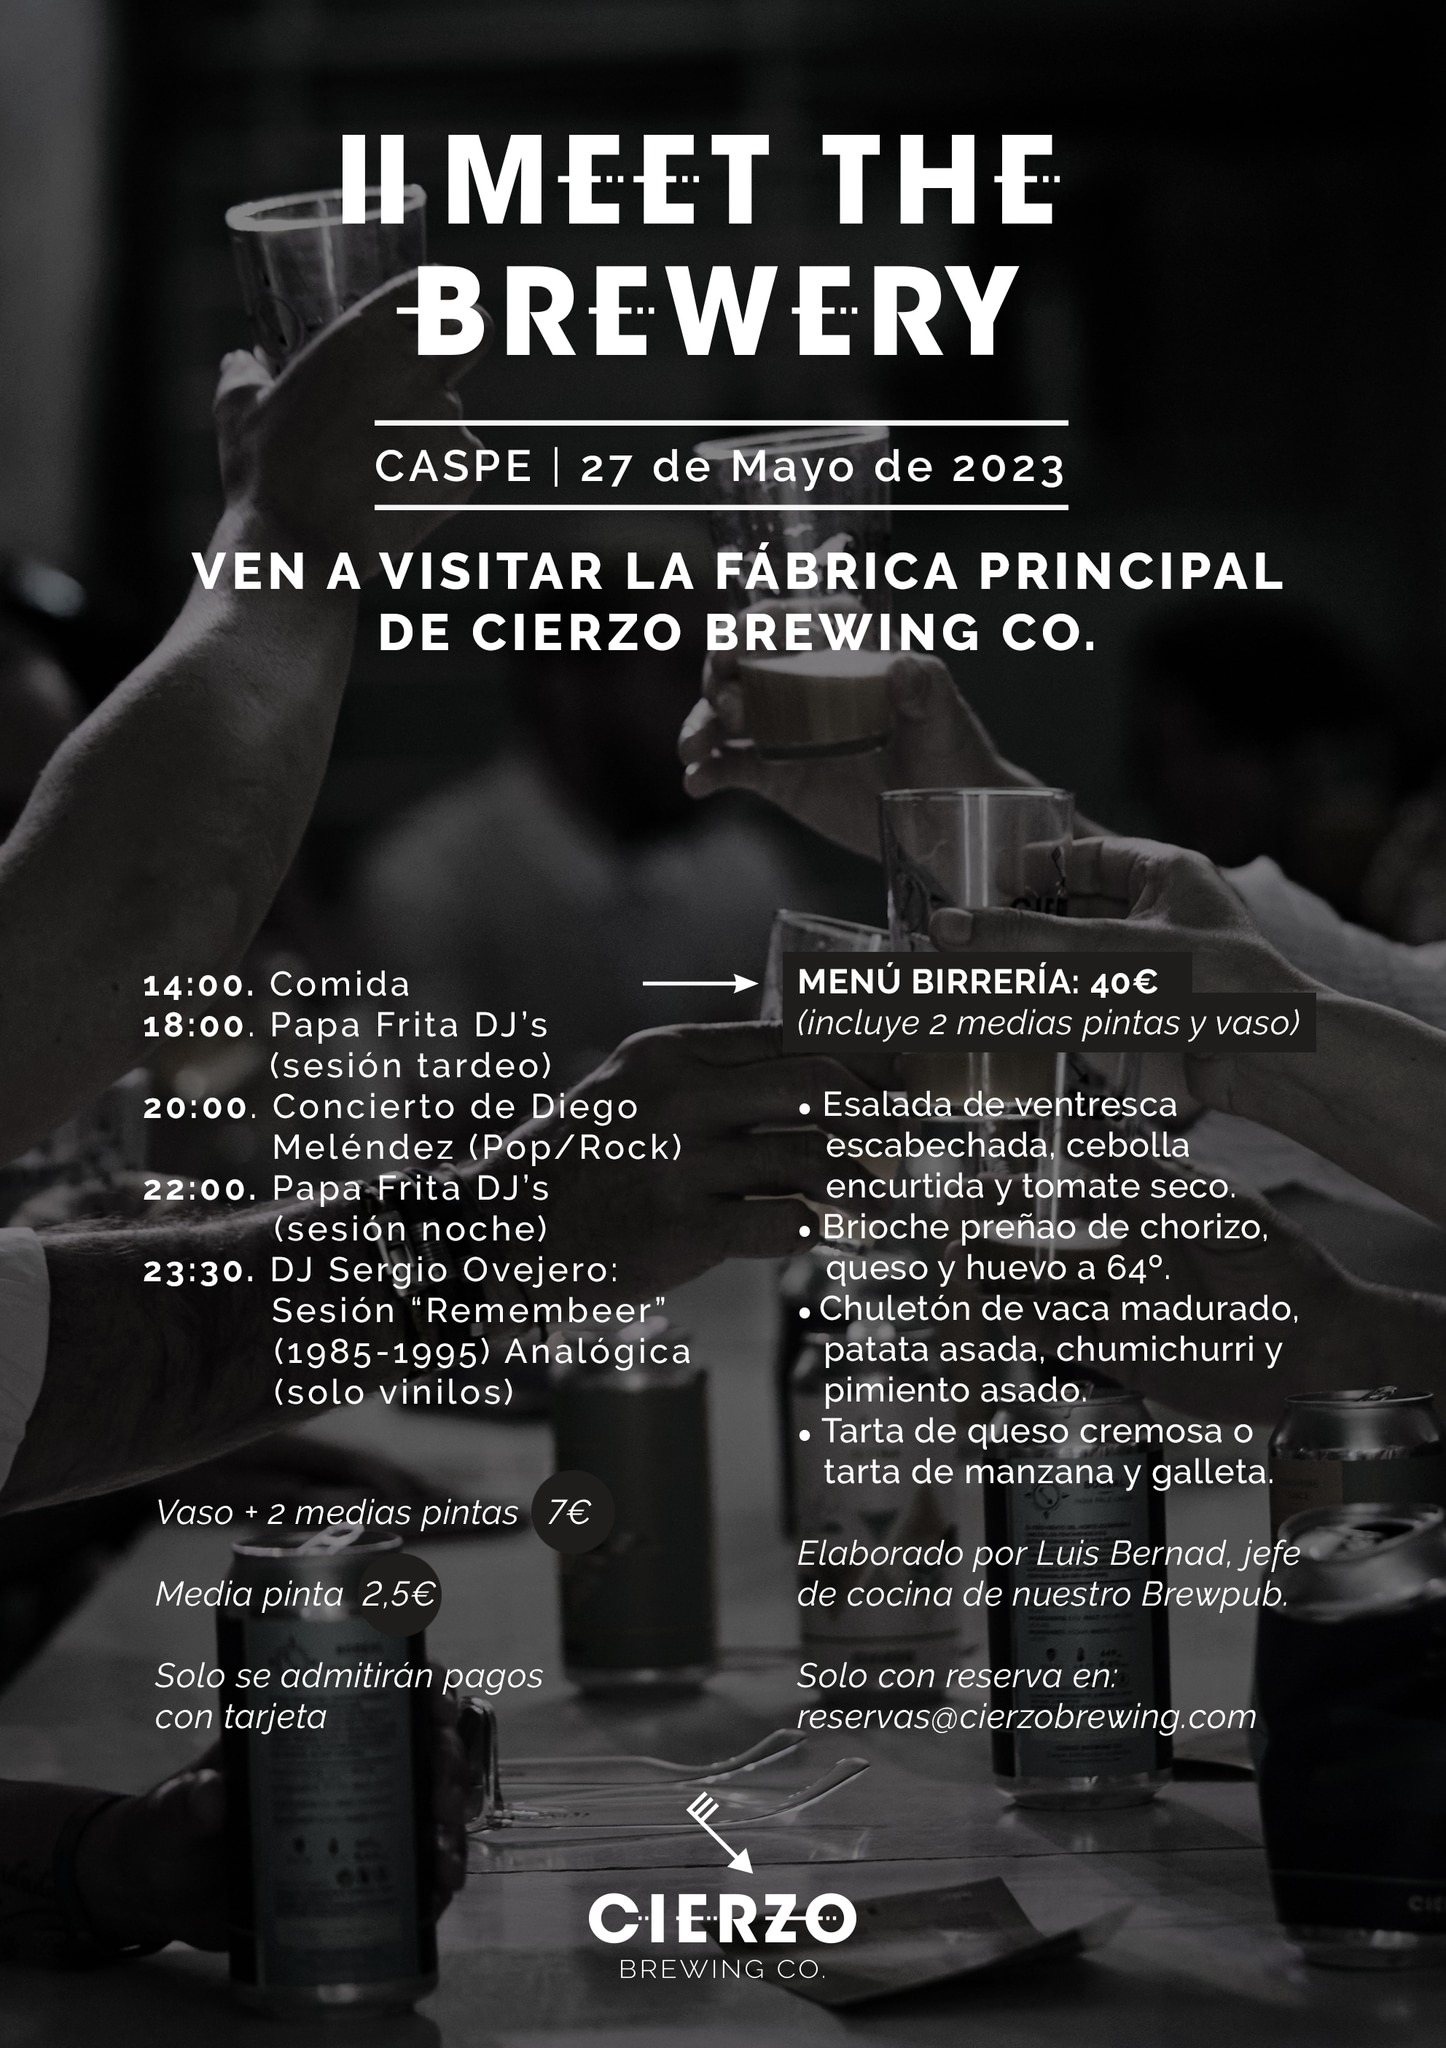 Meet the Brewery: Visita Oficial a la fábrica de Cierzo Brewing Co en Caspe (Zaragoza)